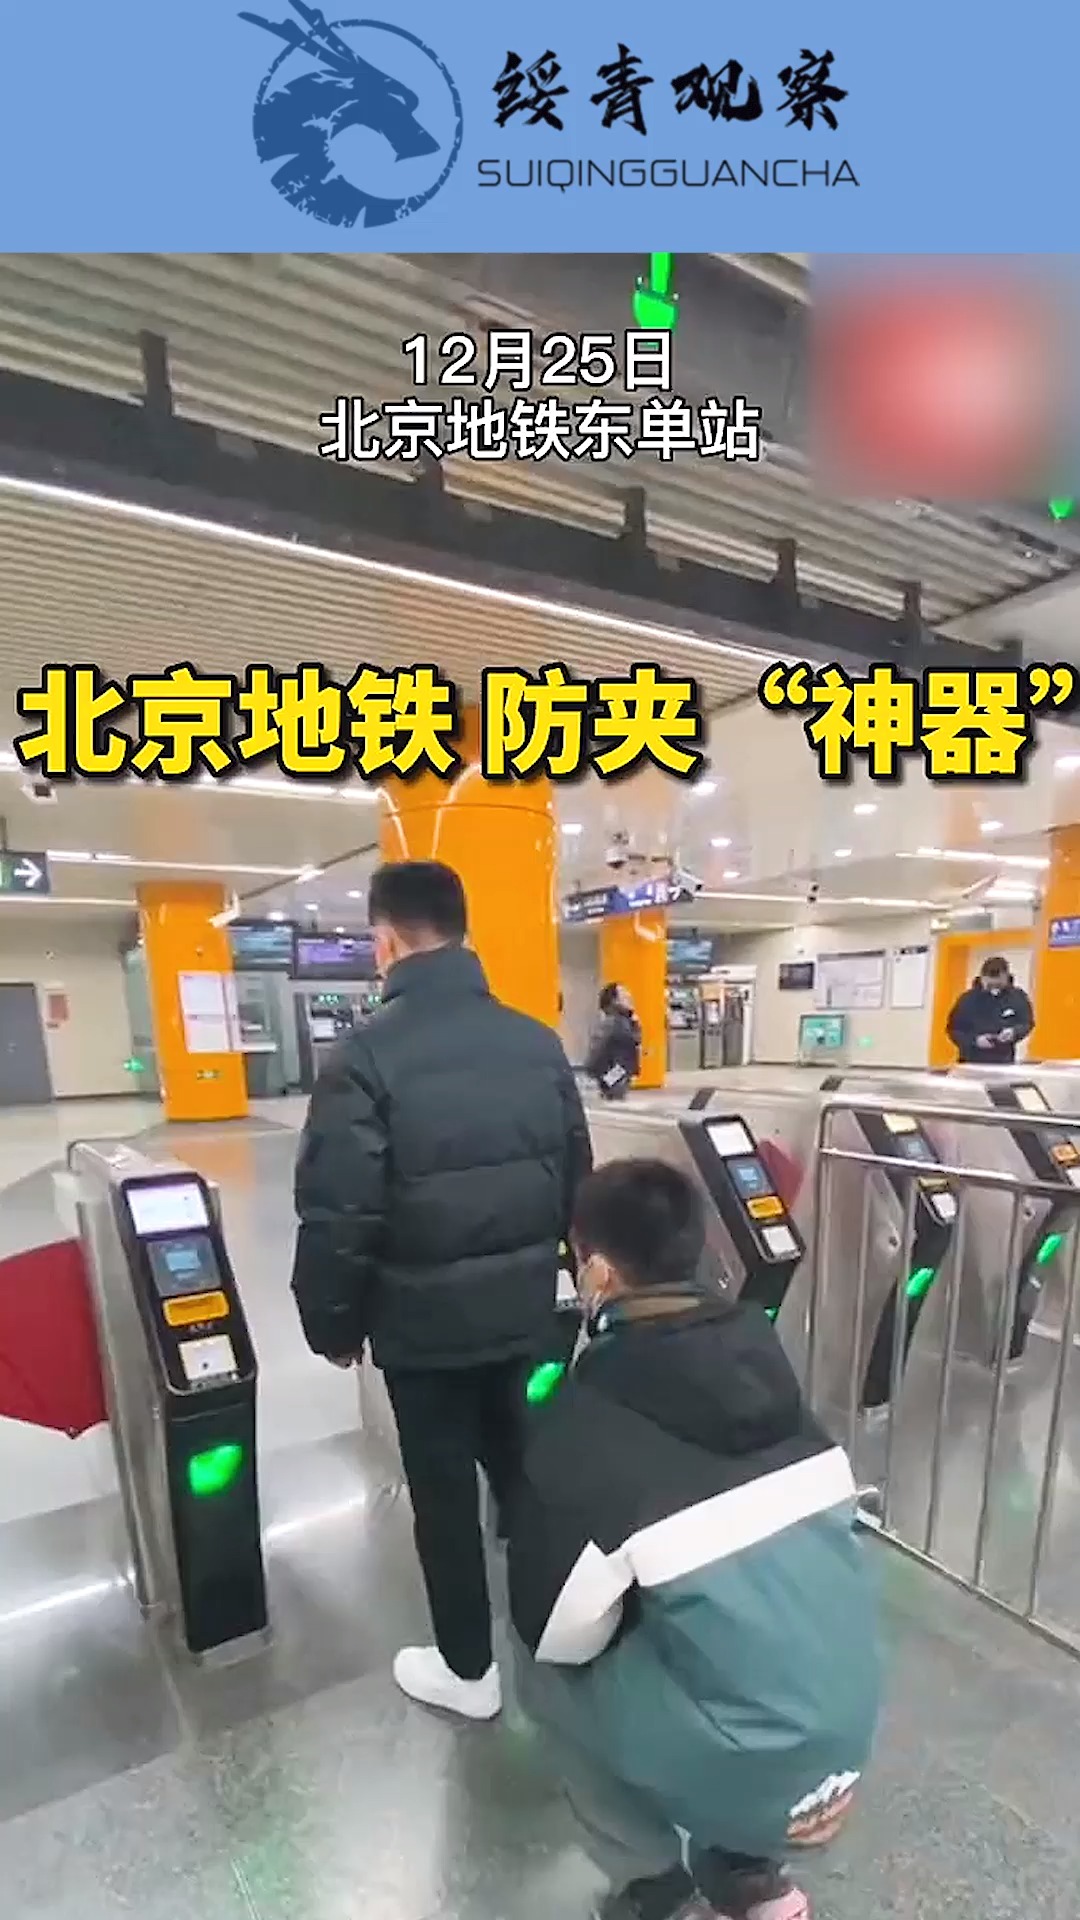 北京地铁,五号线东单站,试点防夹神器